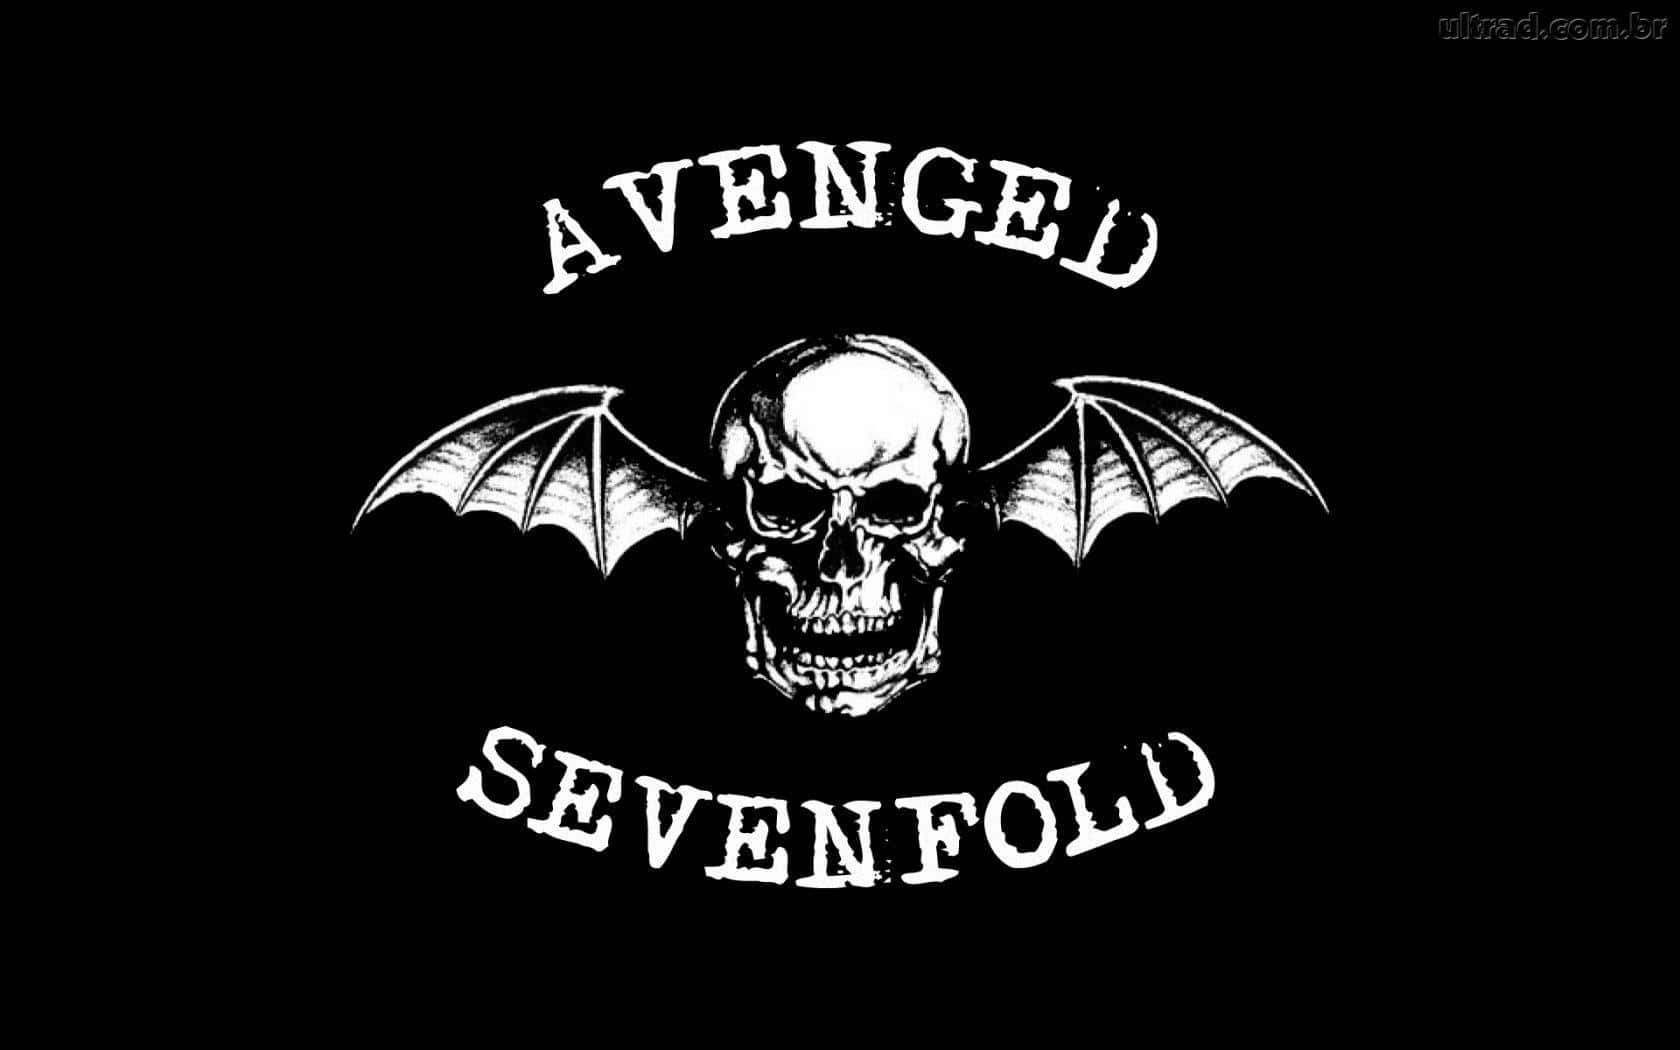 Avengedsevenfold-logotyp På En Svart Bakgrund. Wallpaper